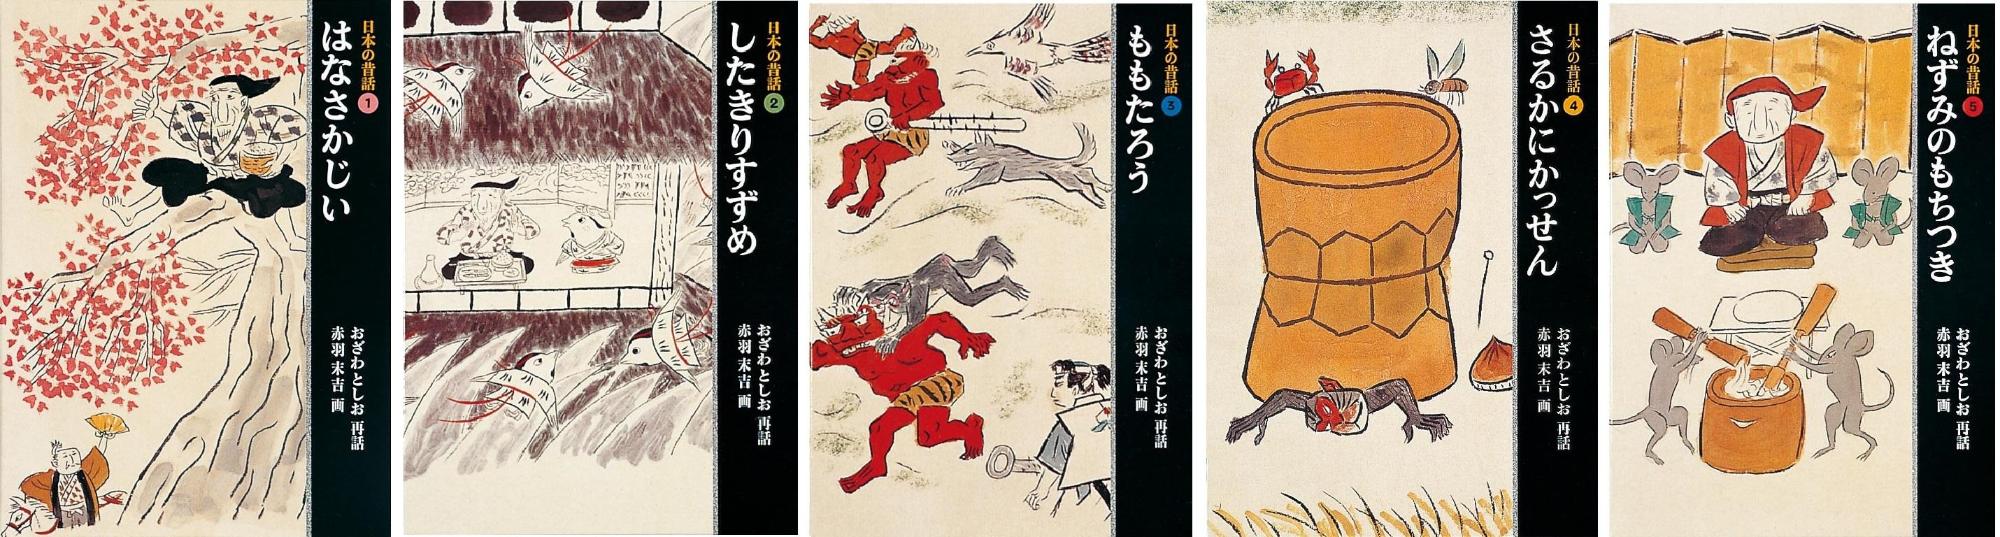 『日本の昔話(1)～(5)』絵本の表紙